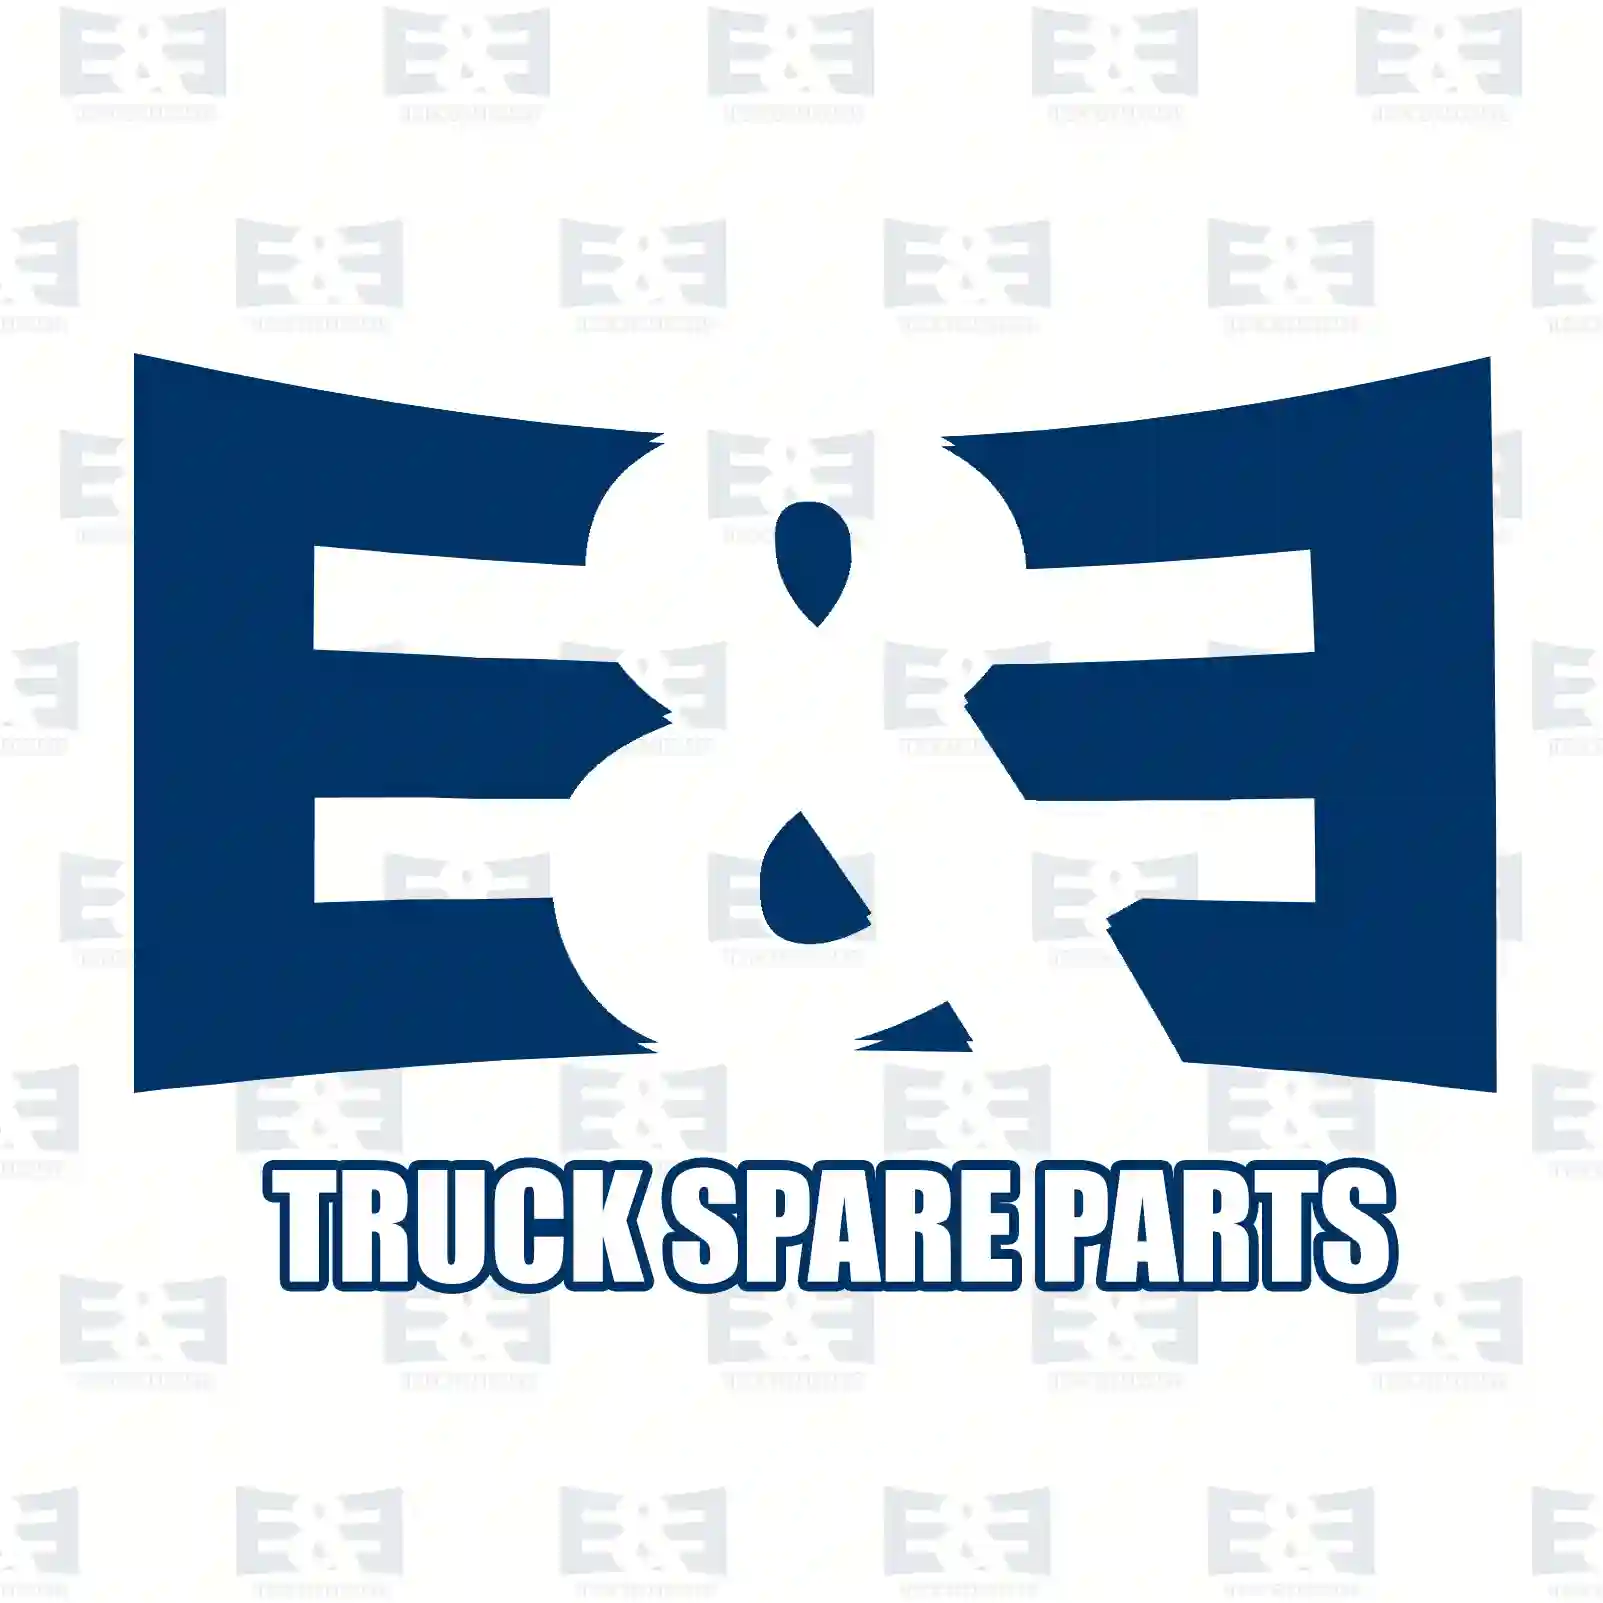 Brake disc, 2E2294877, 5000450158, 5000450158, 5000545242, MBR5109, , ||  2E2294877 E&E Truck Spare Parts | Truck Spare Parts, Auotomotive Spare Parts Brake disc, 2E2294877, 5000450158, 5000450158, 5000545242, MBR5109, , ||  2E2294877 E&E Truck Spare Parts | Truck Spare Parts, Auotomotive Spare Parts